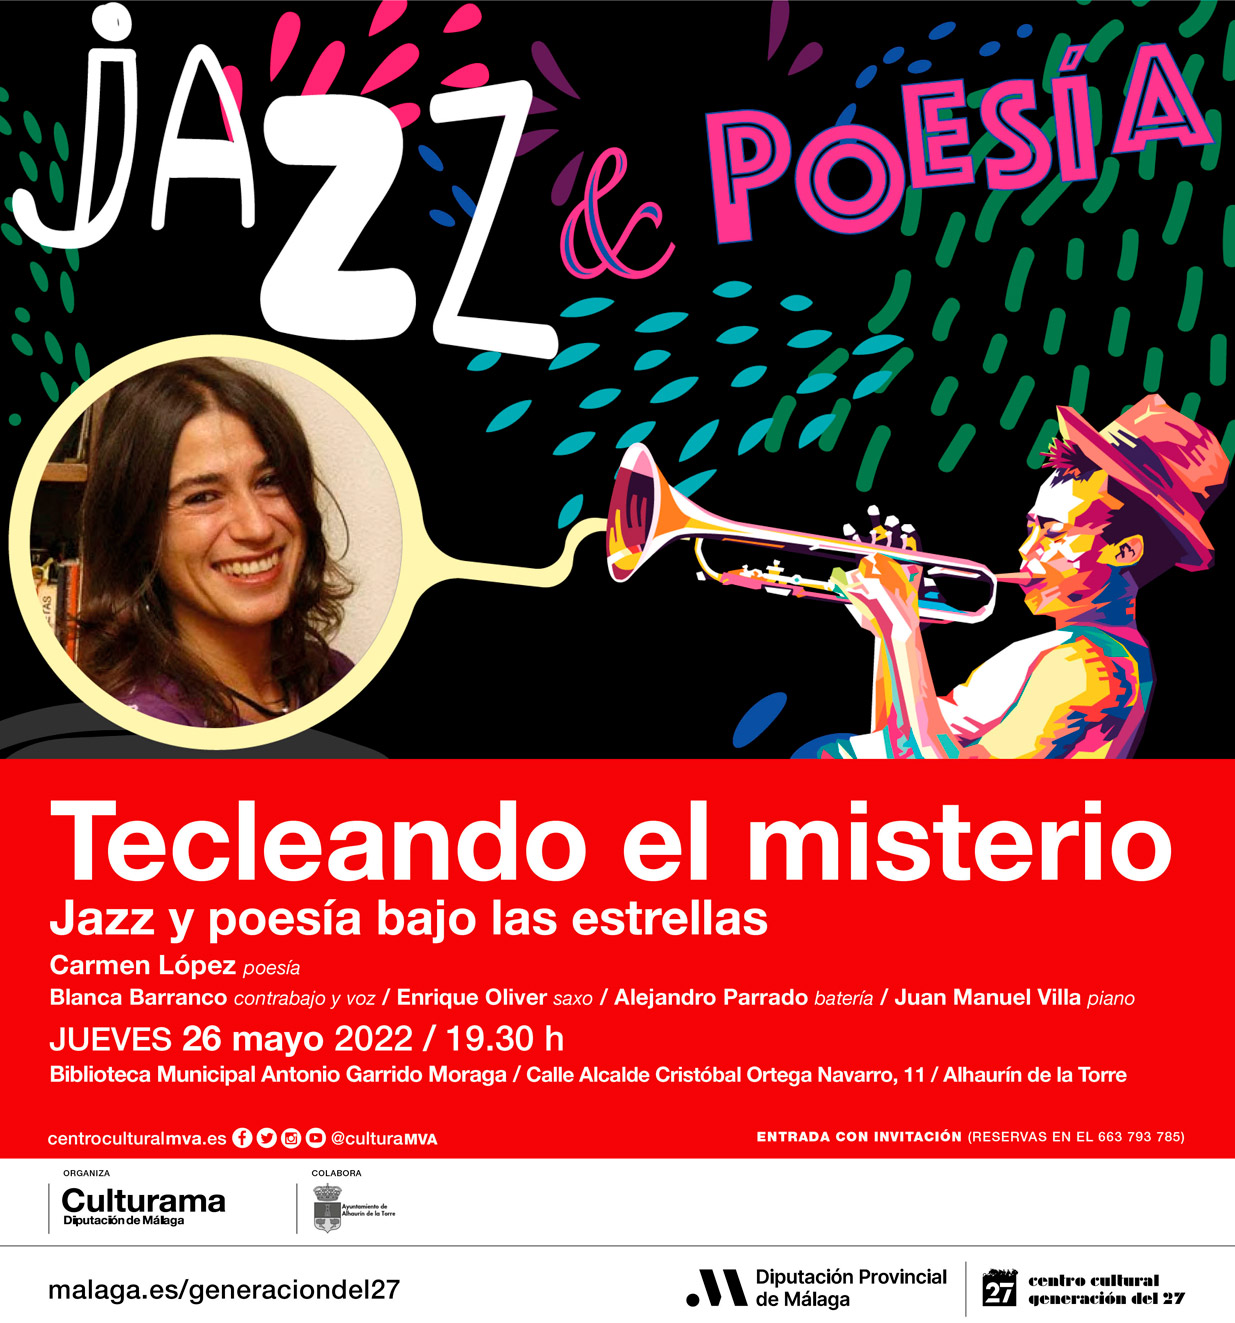 26 de mayo - JAZZ & POESÍA - Tecleando el misterio. Jazz y poesía bajo las estrellas